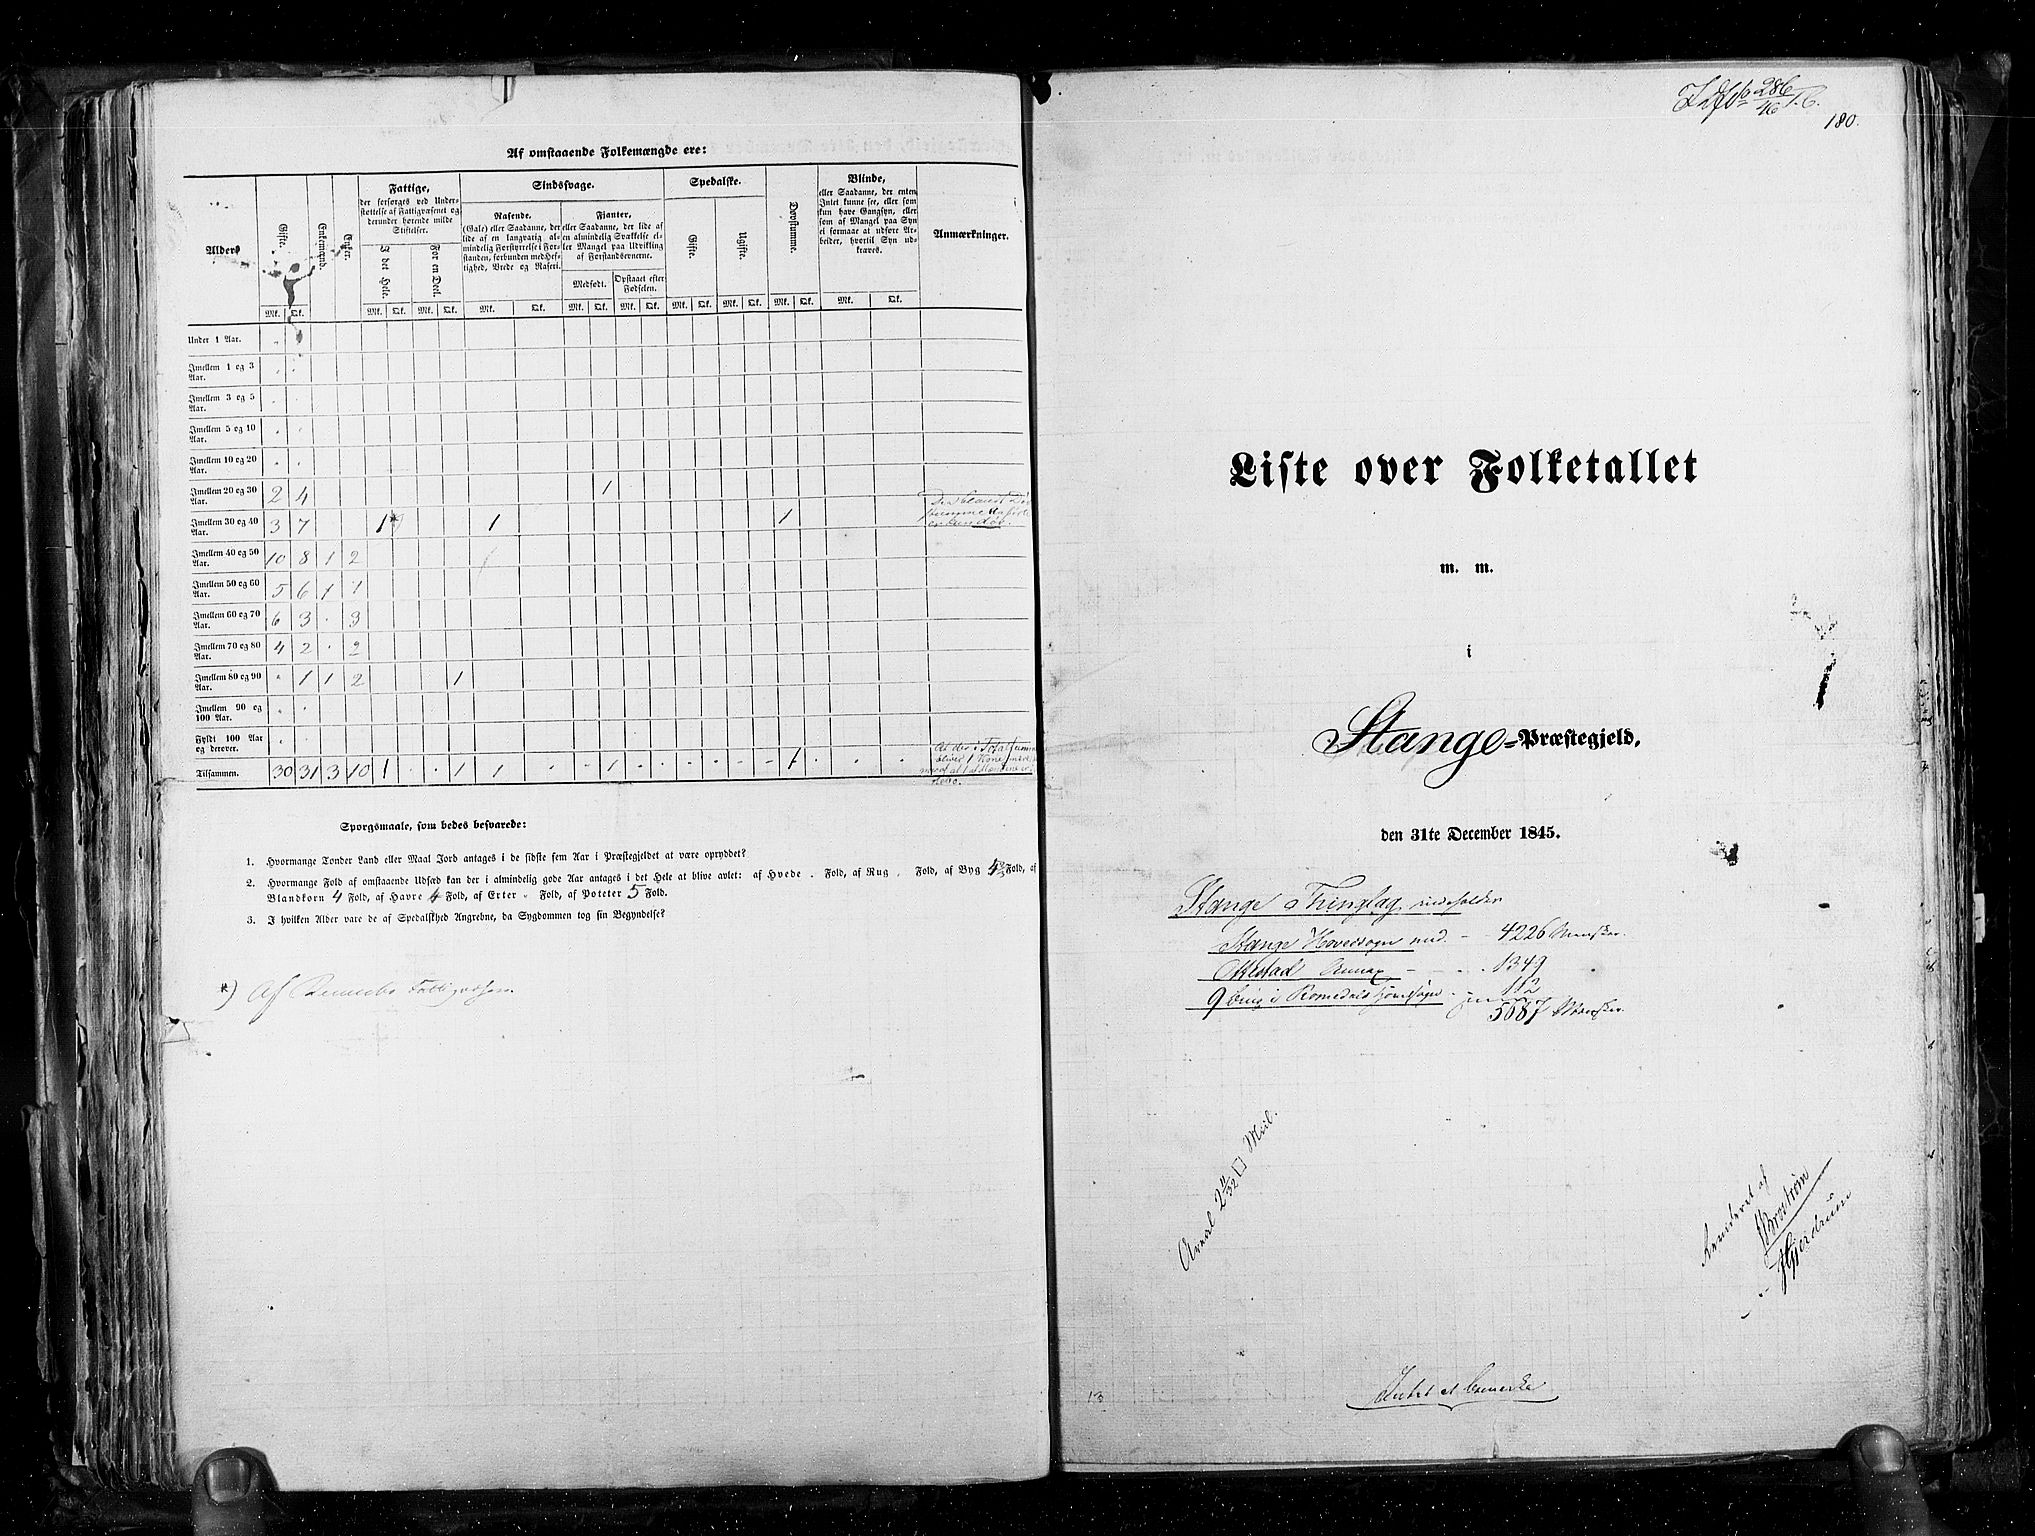 RA, Folketellingen 1845, bind 3: Hedemarken amt og Kristians amt, 1845, s. 180